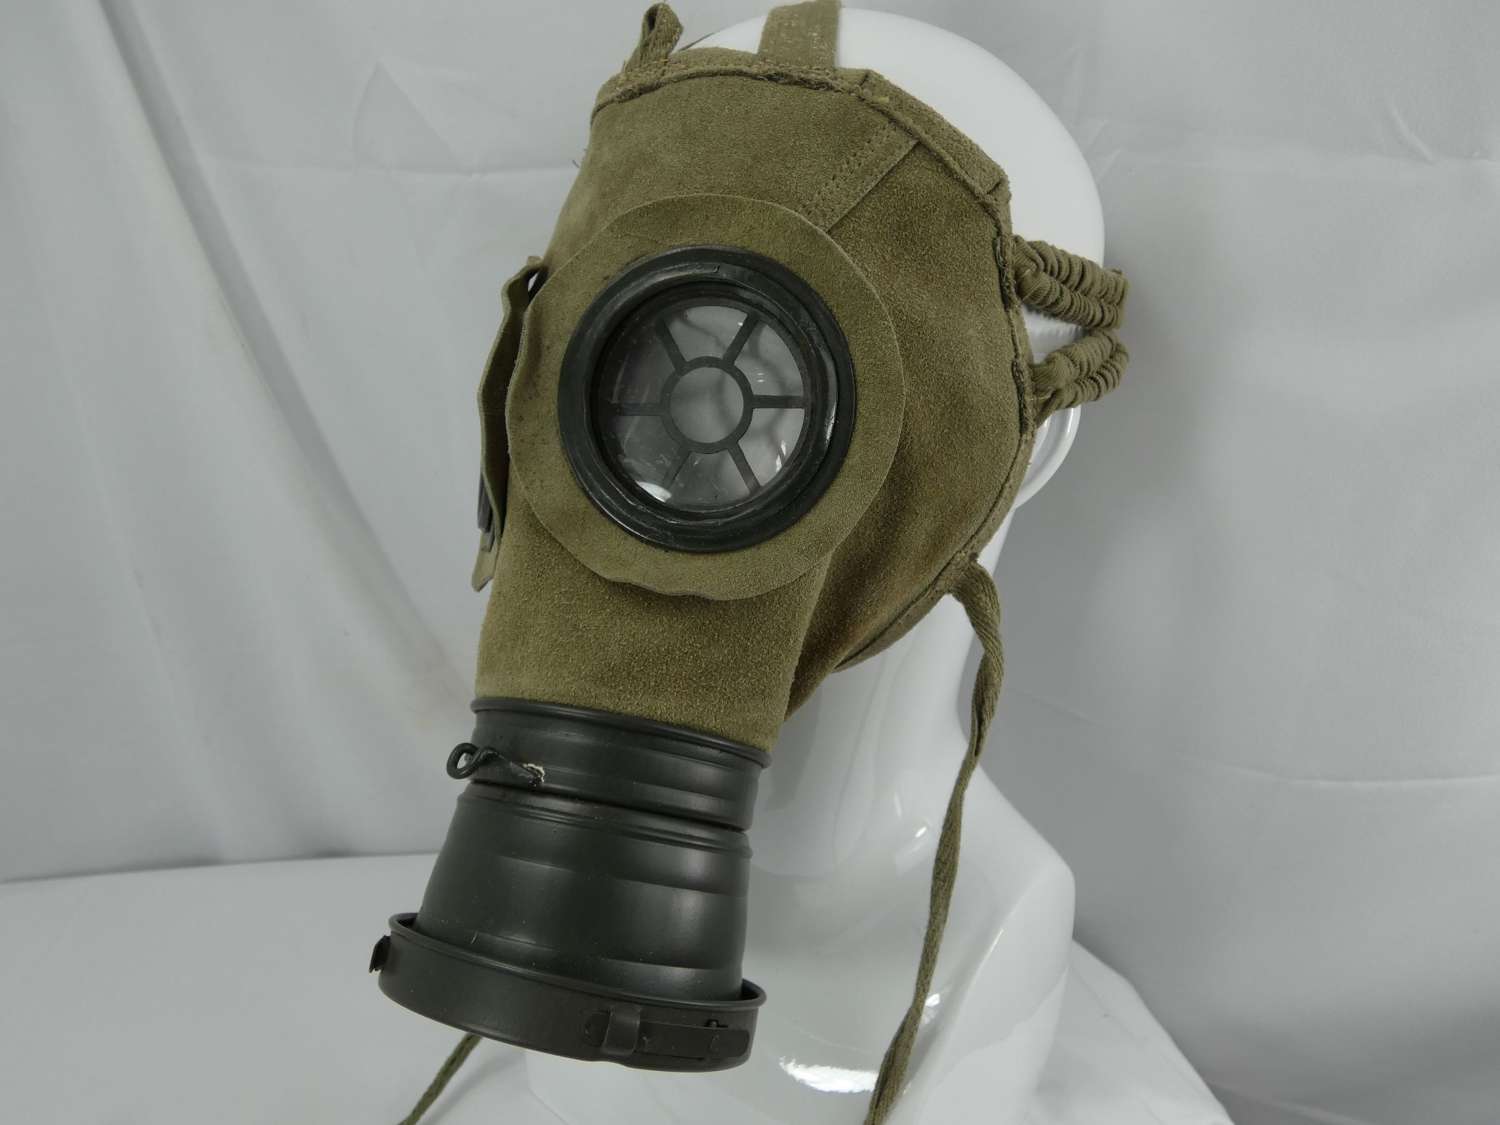 Replica WW1 German Gas Mask